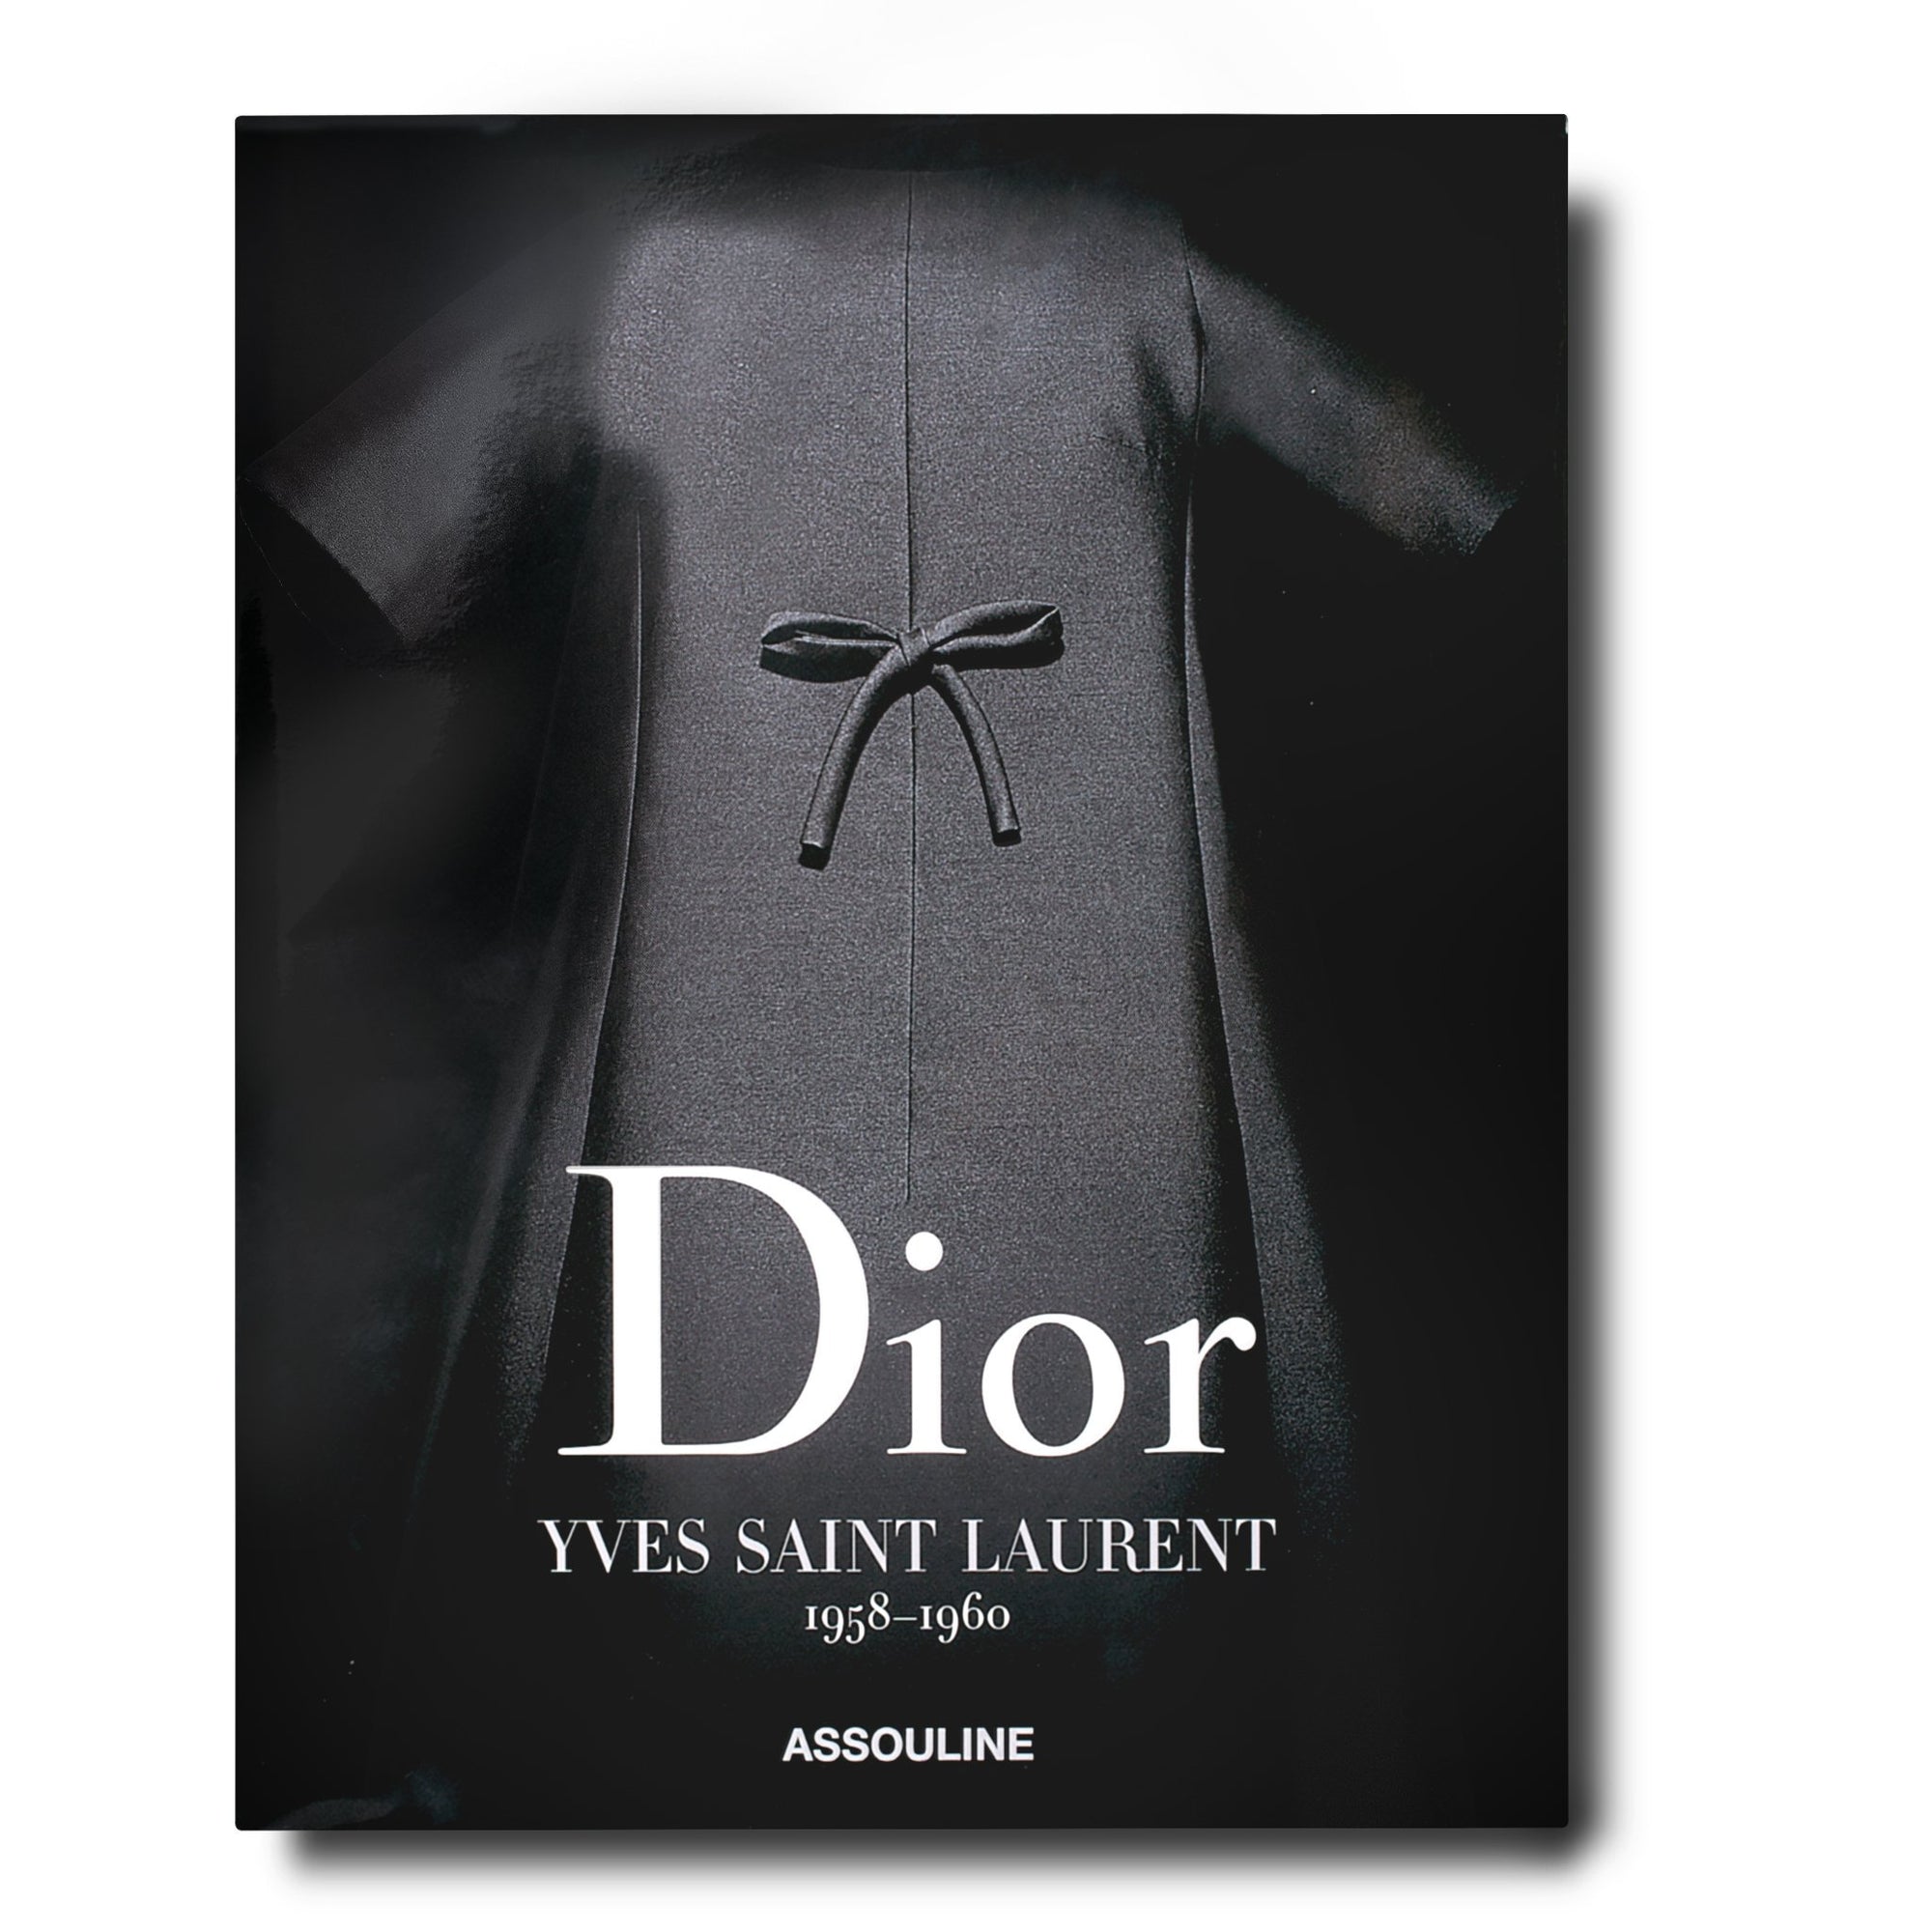 Louis Vuitton: Virgil Abloh (Cartoon Cover) – Privei